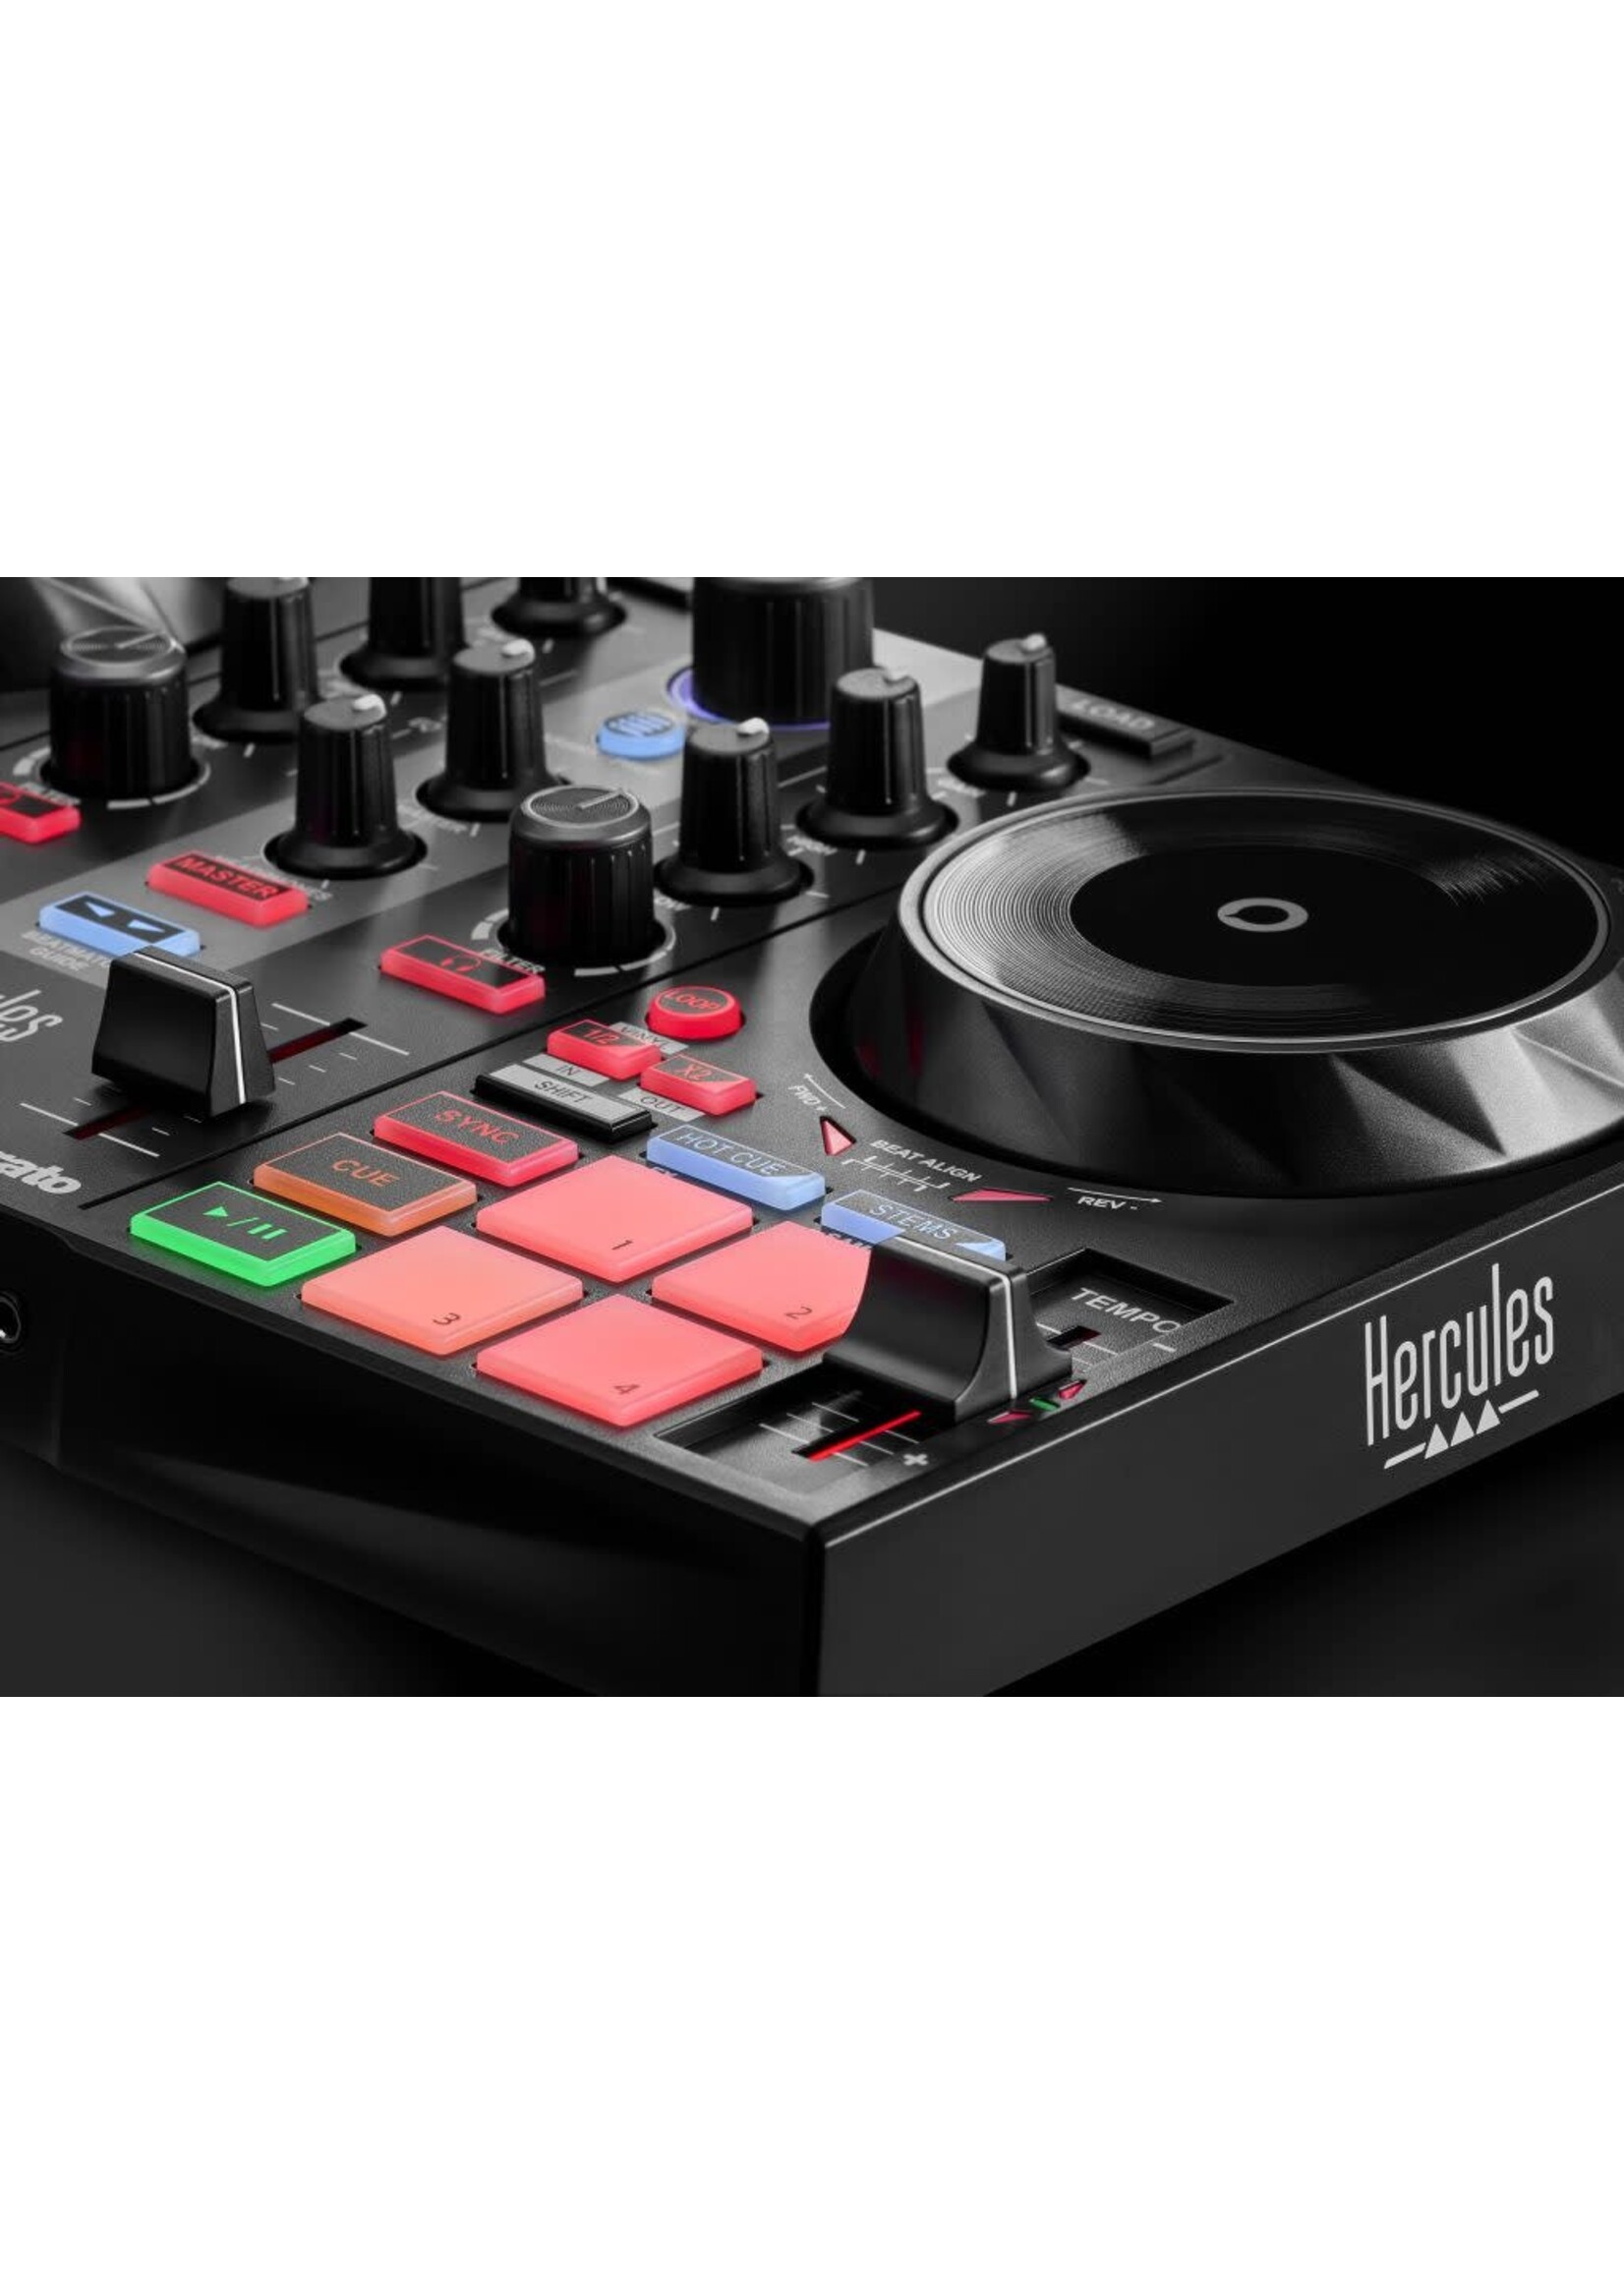 Hercules DJ Hercules DJ DJControl Inpulse 200 MK2 DJ Controller/Interface